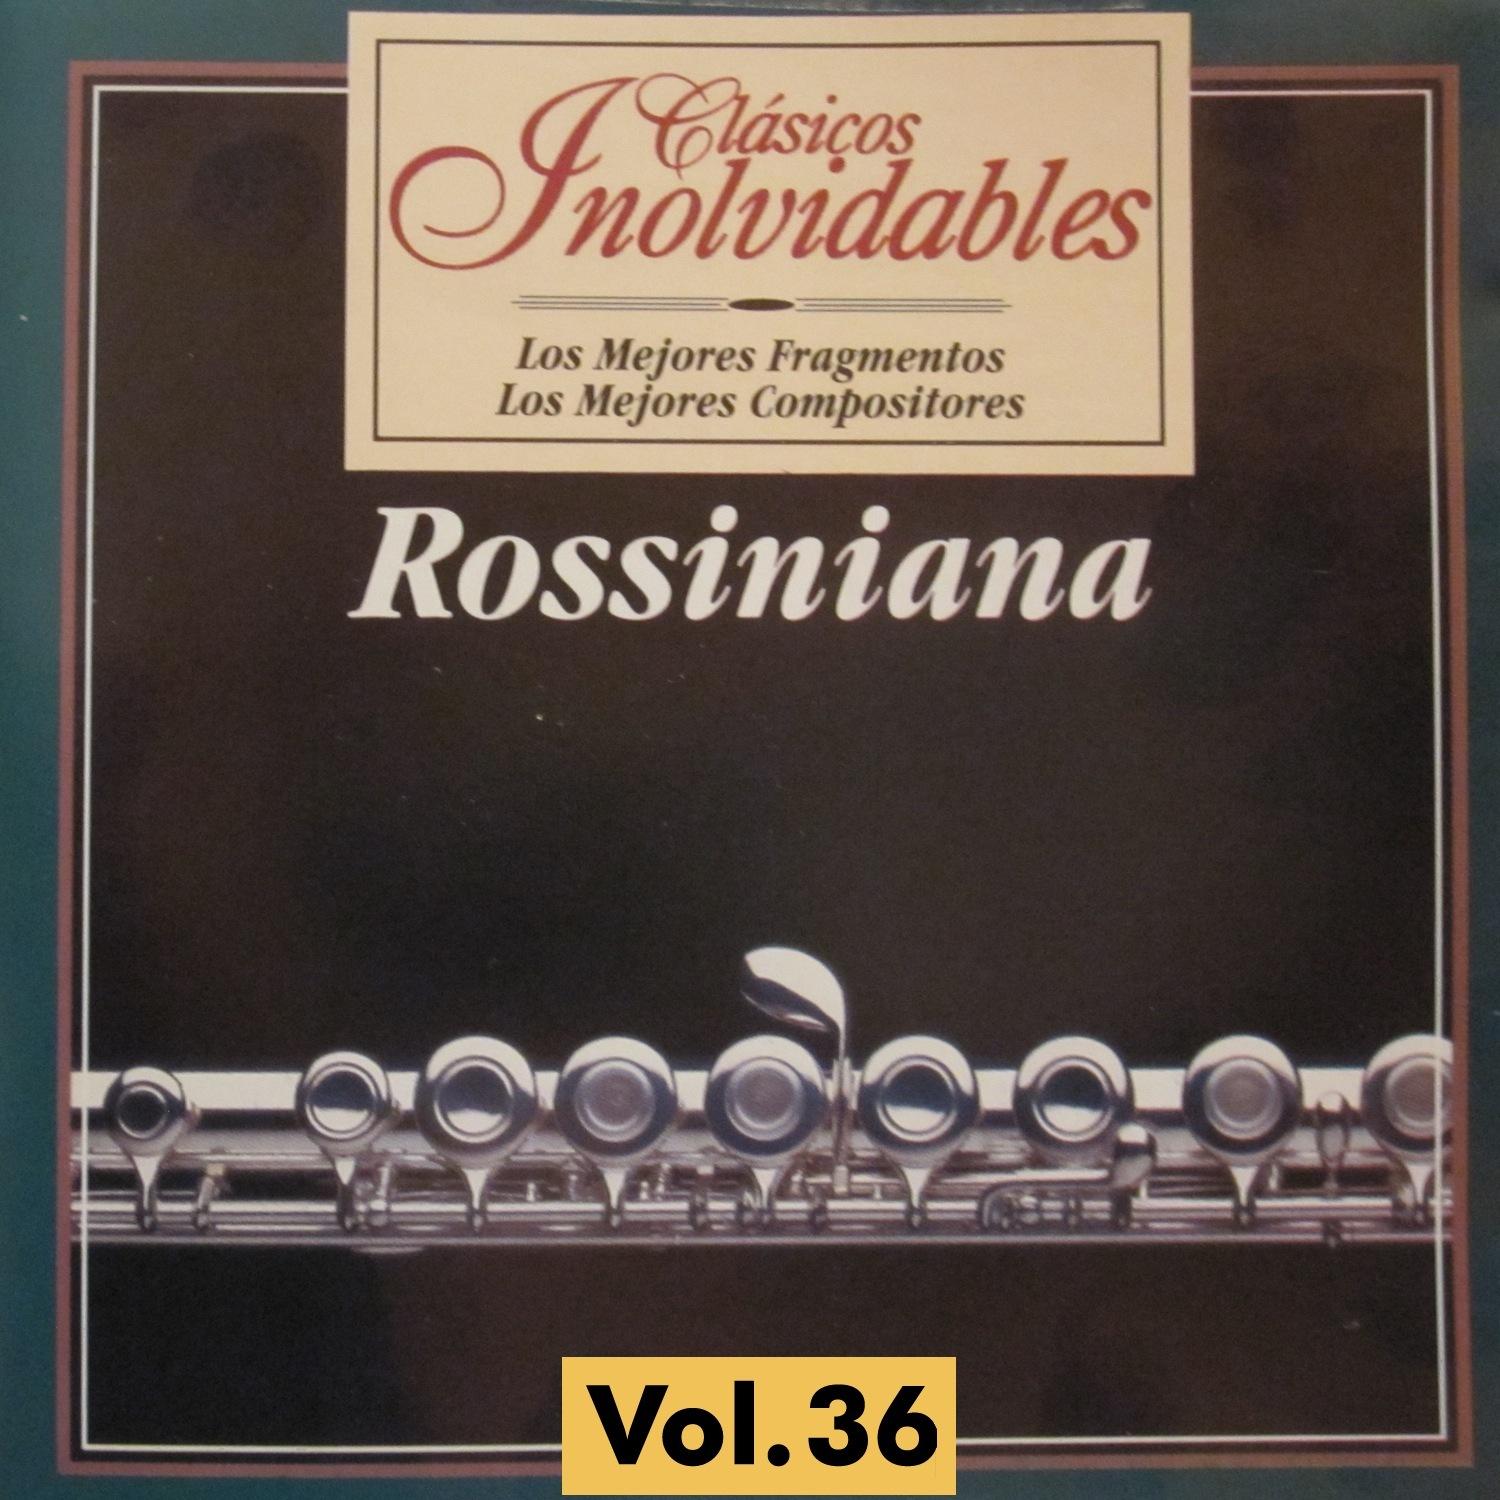 Cla sicos Inolvidables Vol. 36, Rossiniana